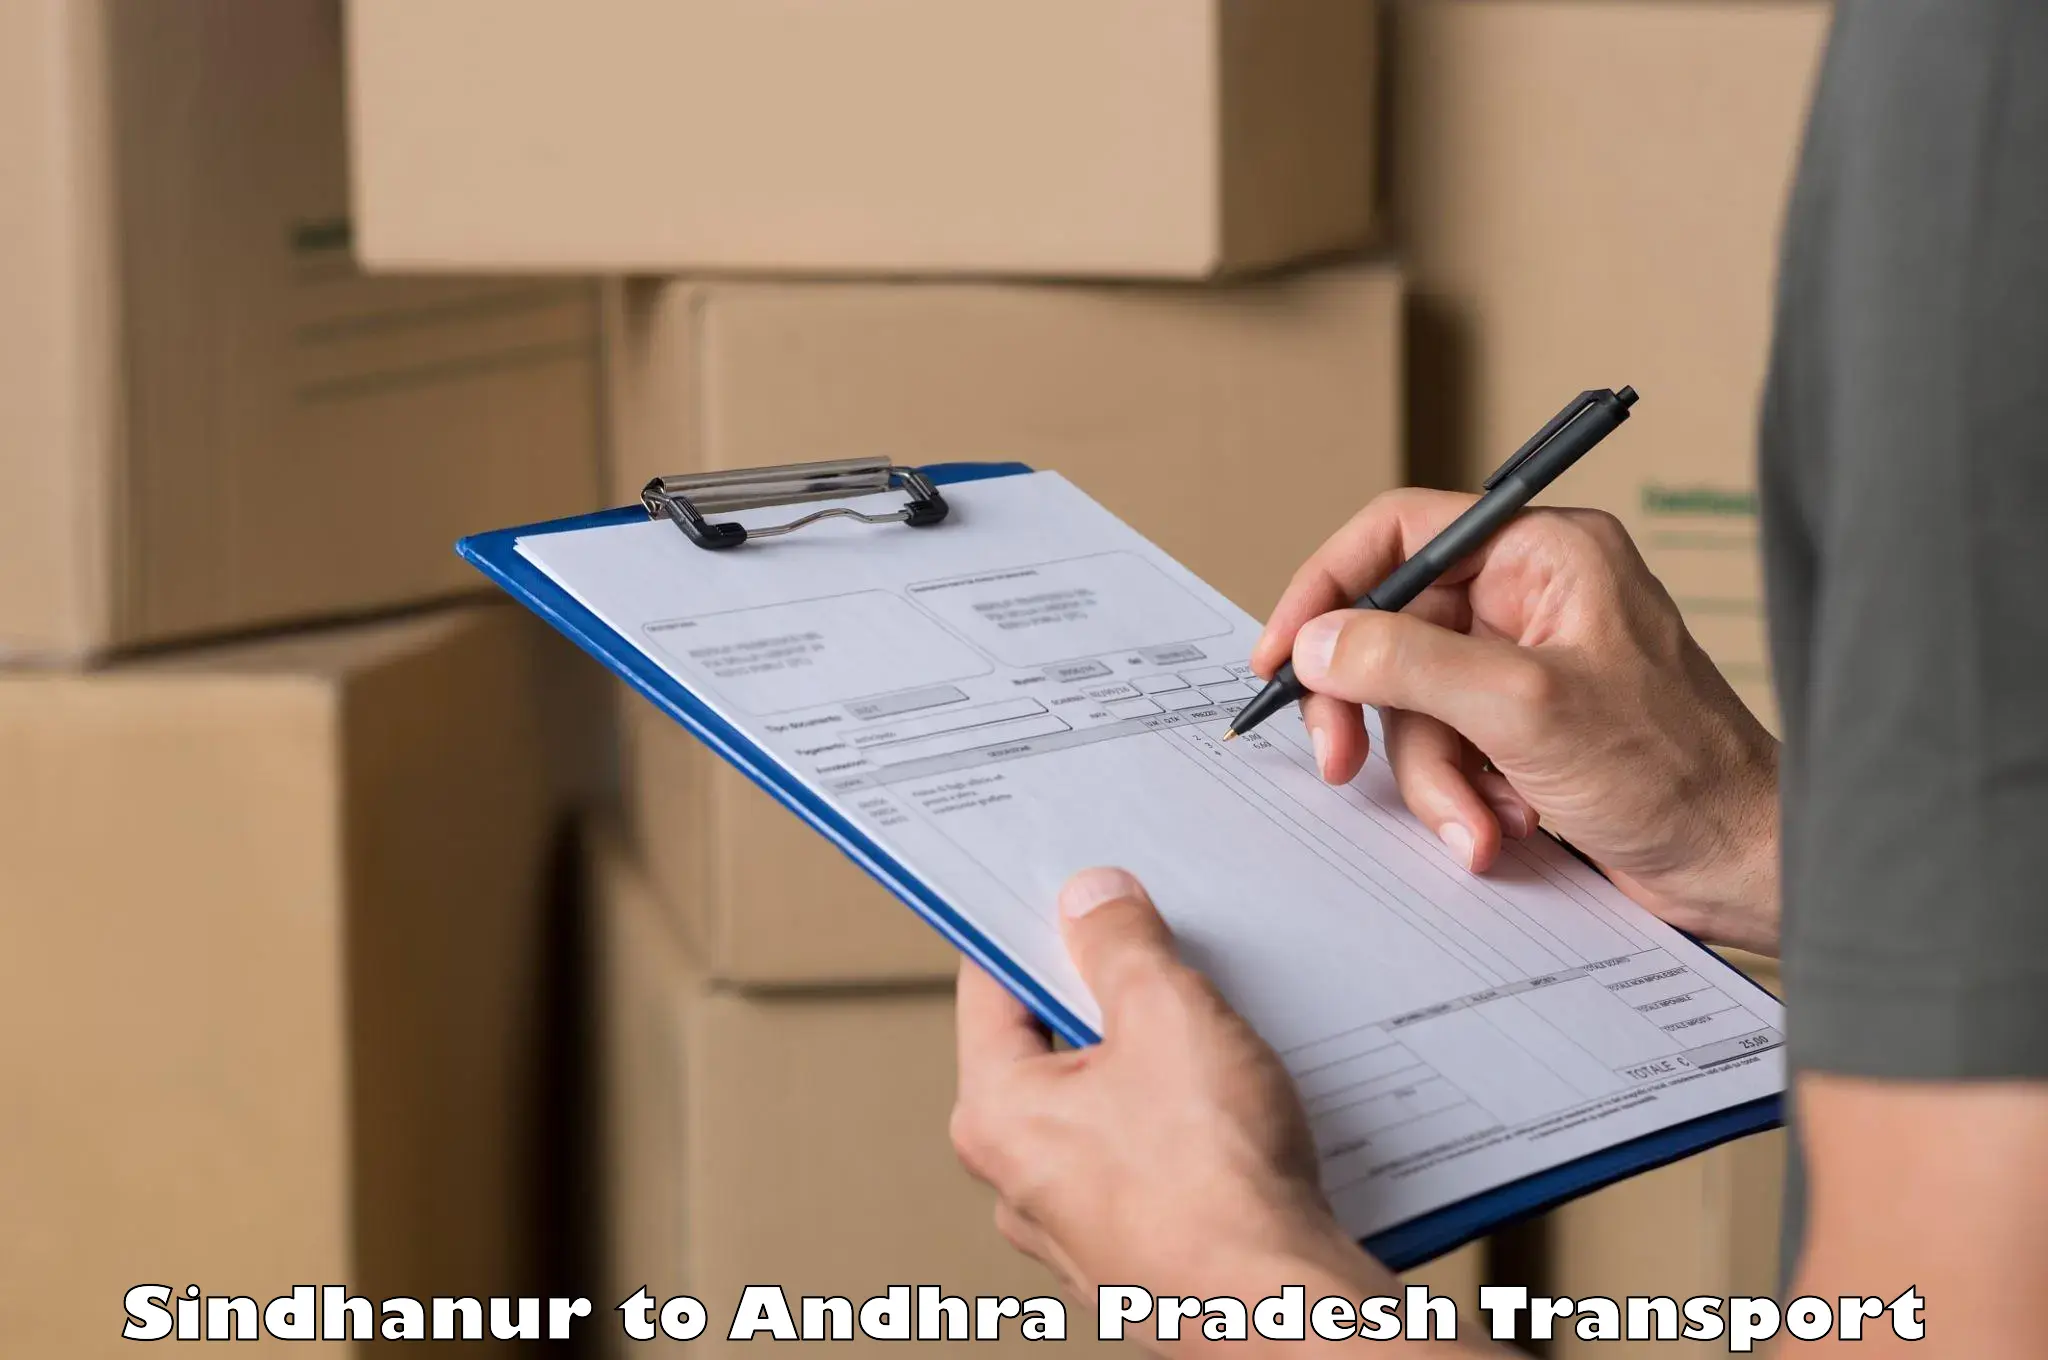 Pick up transport service Sindhanur to West Godavari